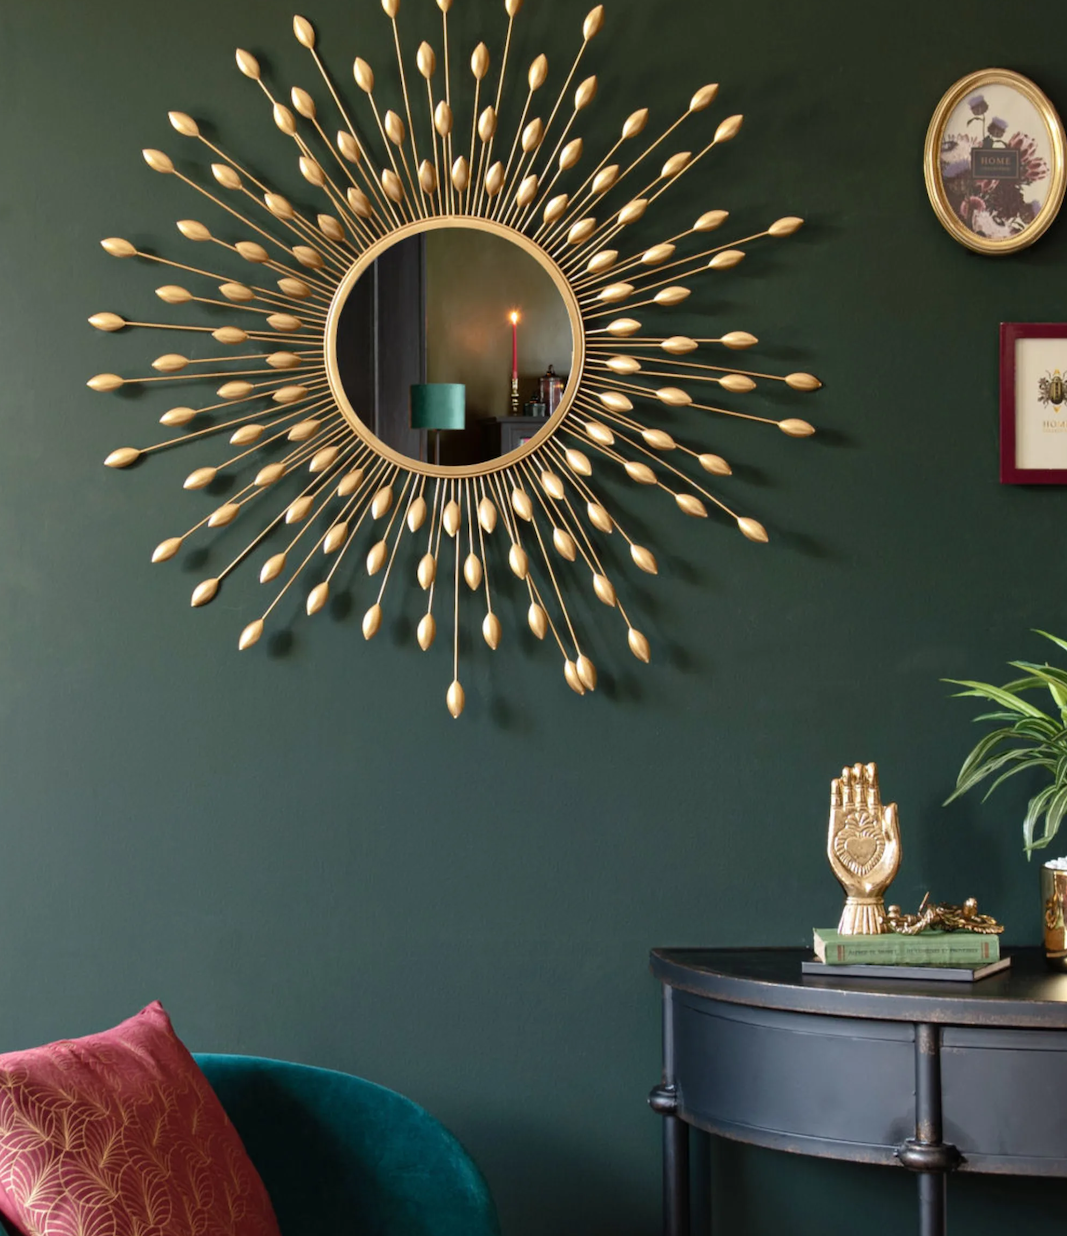 miroir rond soleil laiton doree fauteuil vert canard velours deco salon